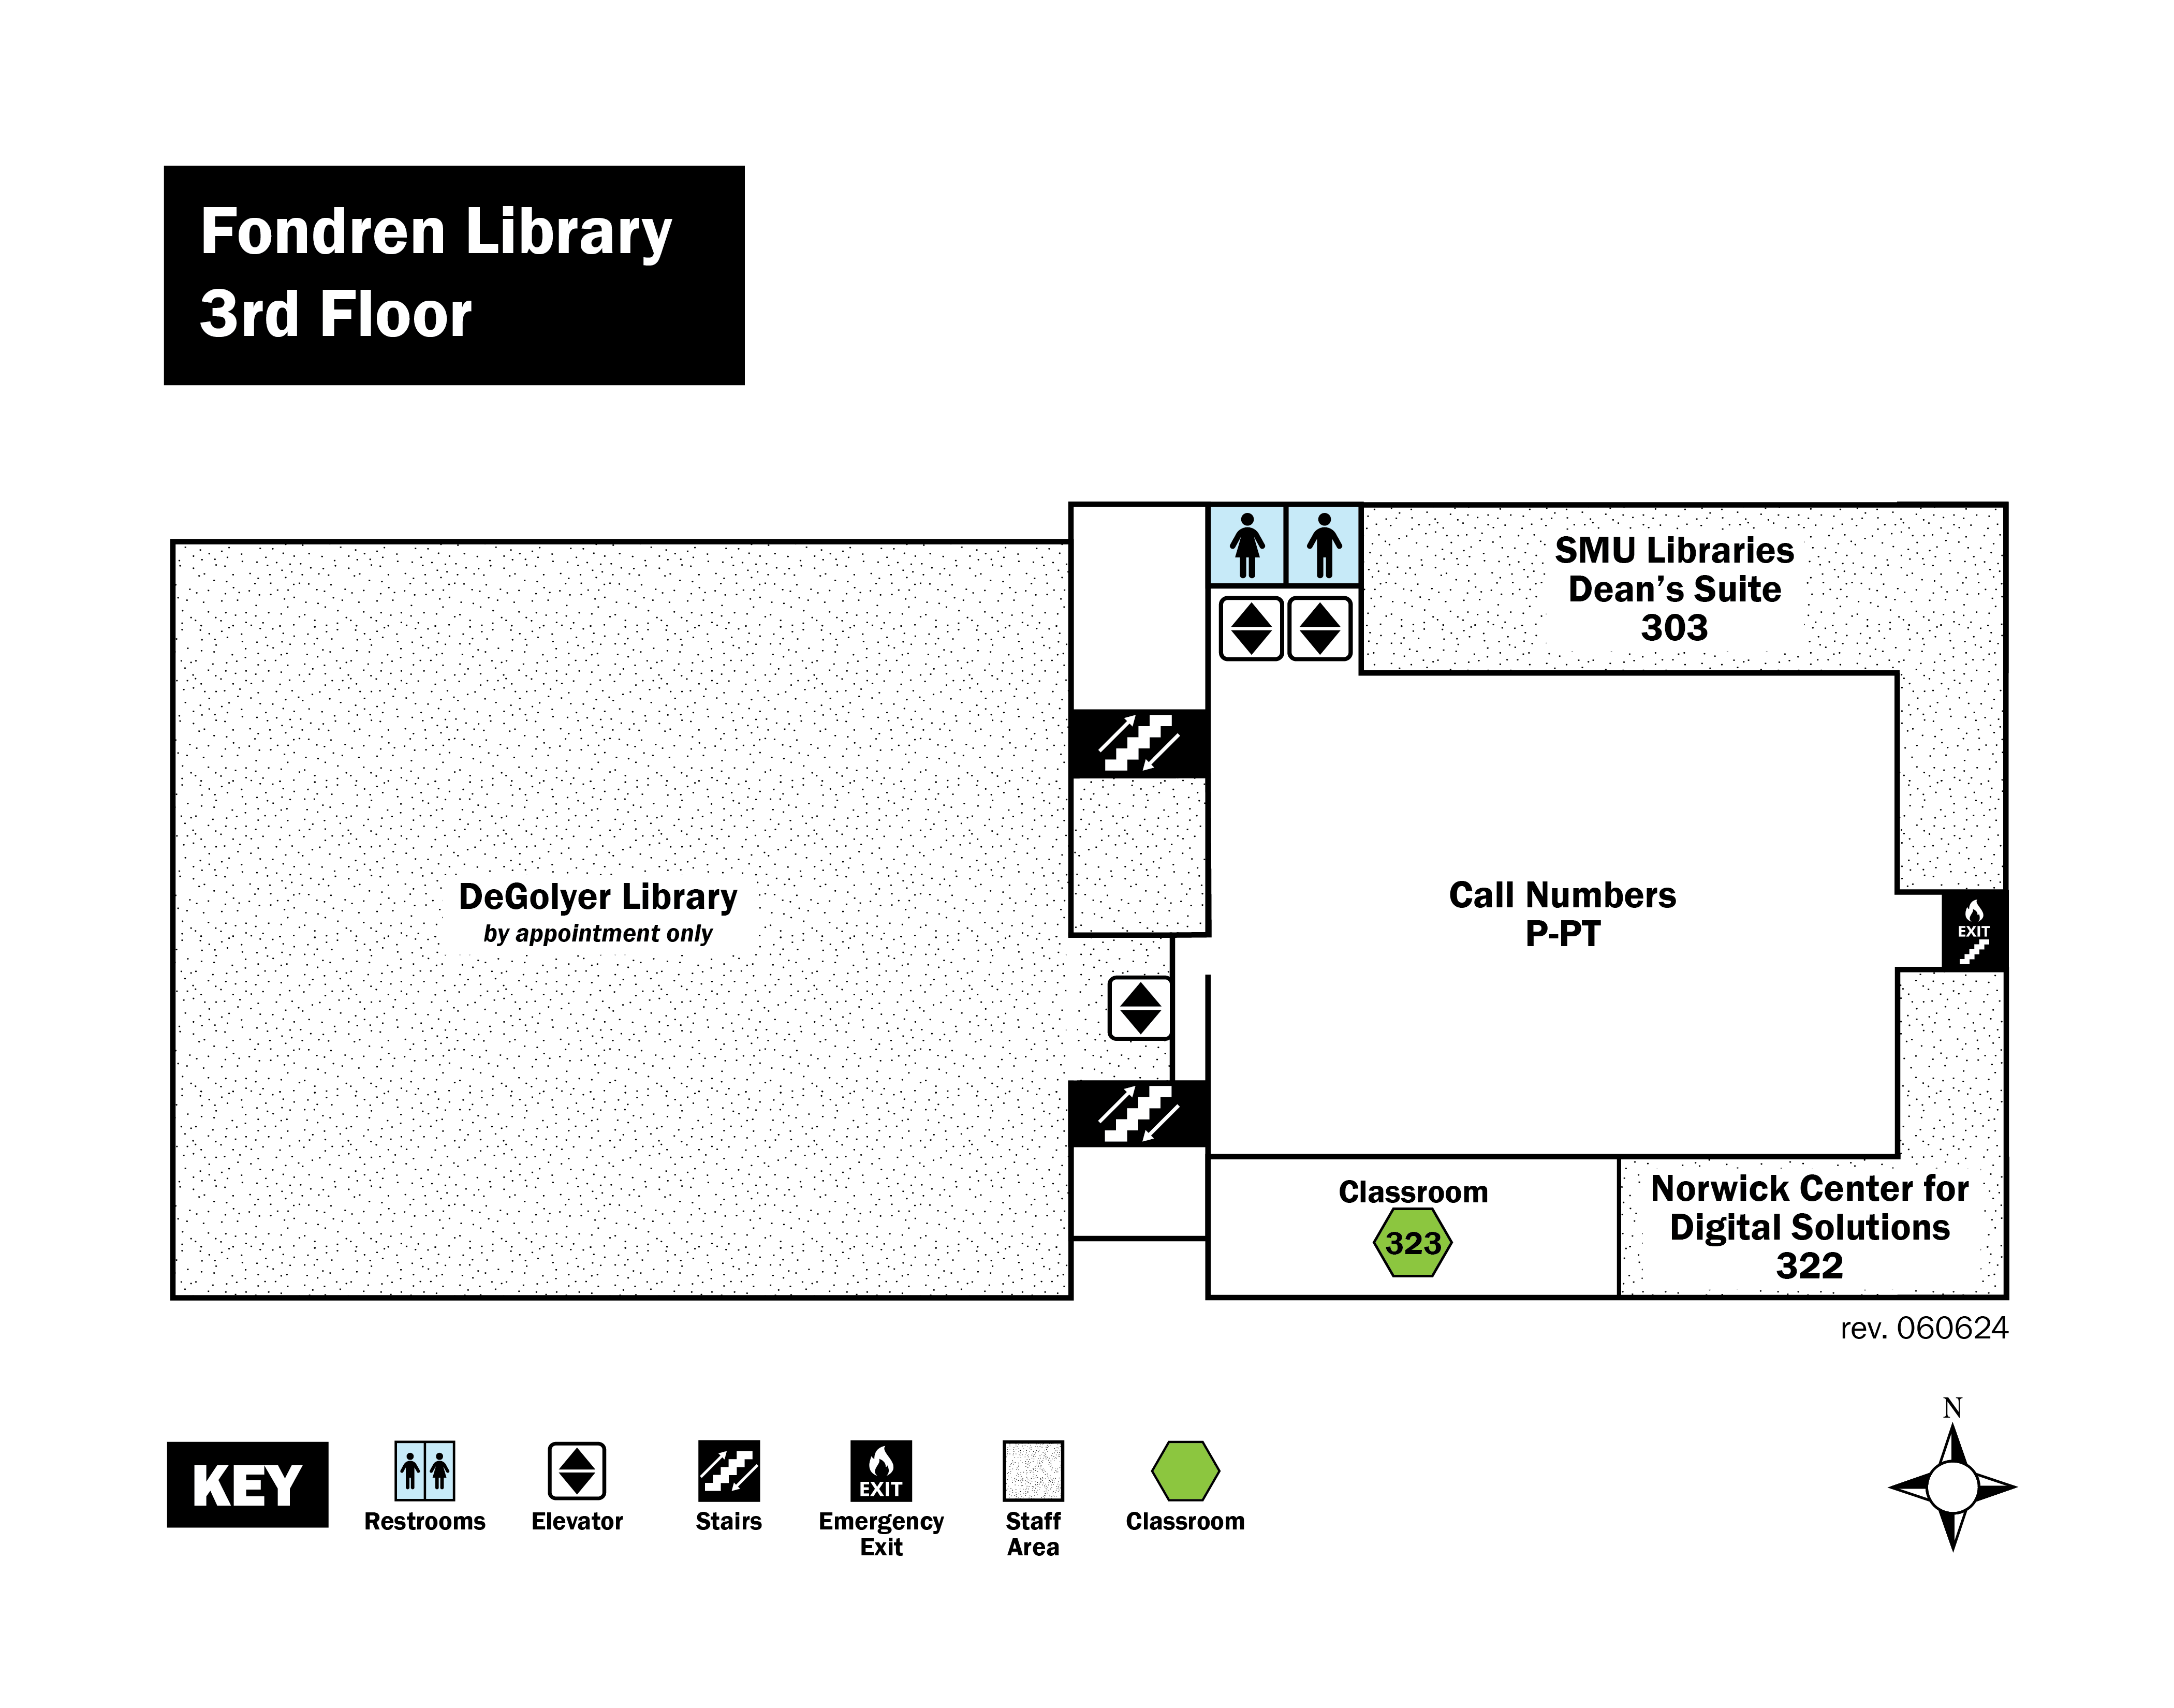 Fondren Library Red, 3rd floor